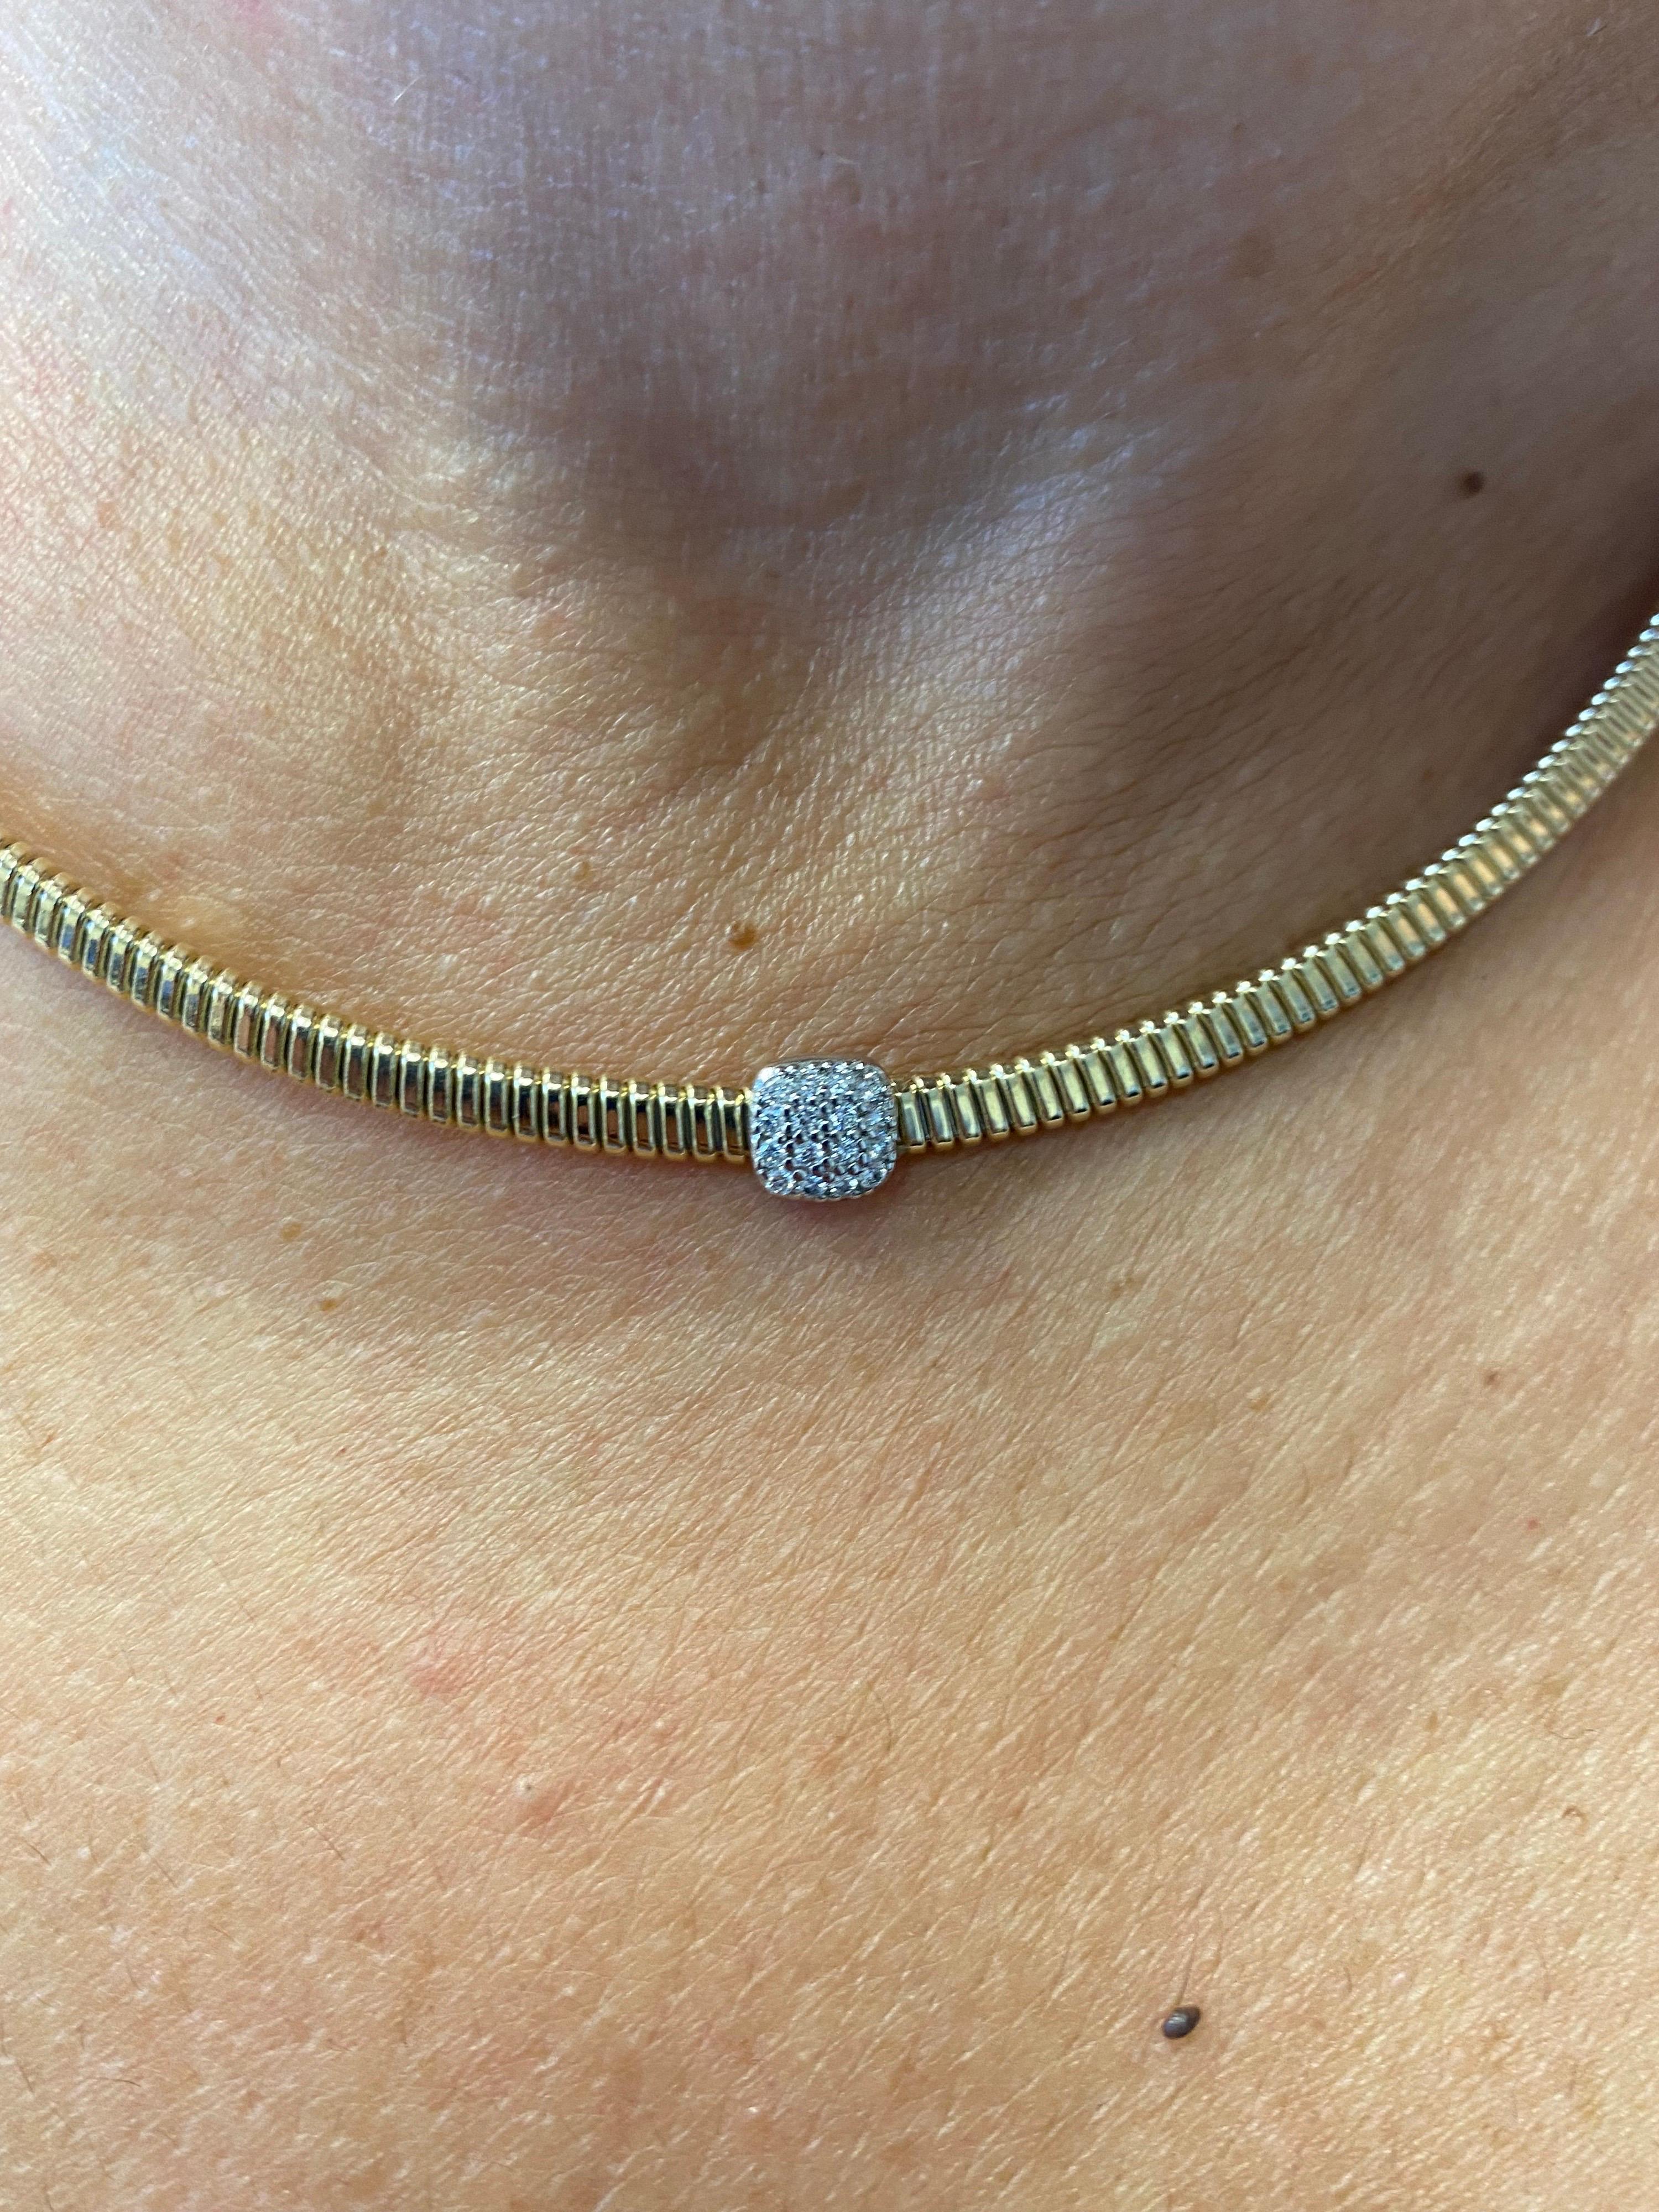 Diamant gefasst in einem Pave' in einer Tubogas Gelbgold Halskette. Die Halskette ist 14K und das Karatgewicht beträgt 0,42 Karat. Die Farbe der Steine ist F-G, die Reinheit ist SI. Die Halskette ist 16 Zoll lang. 